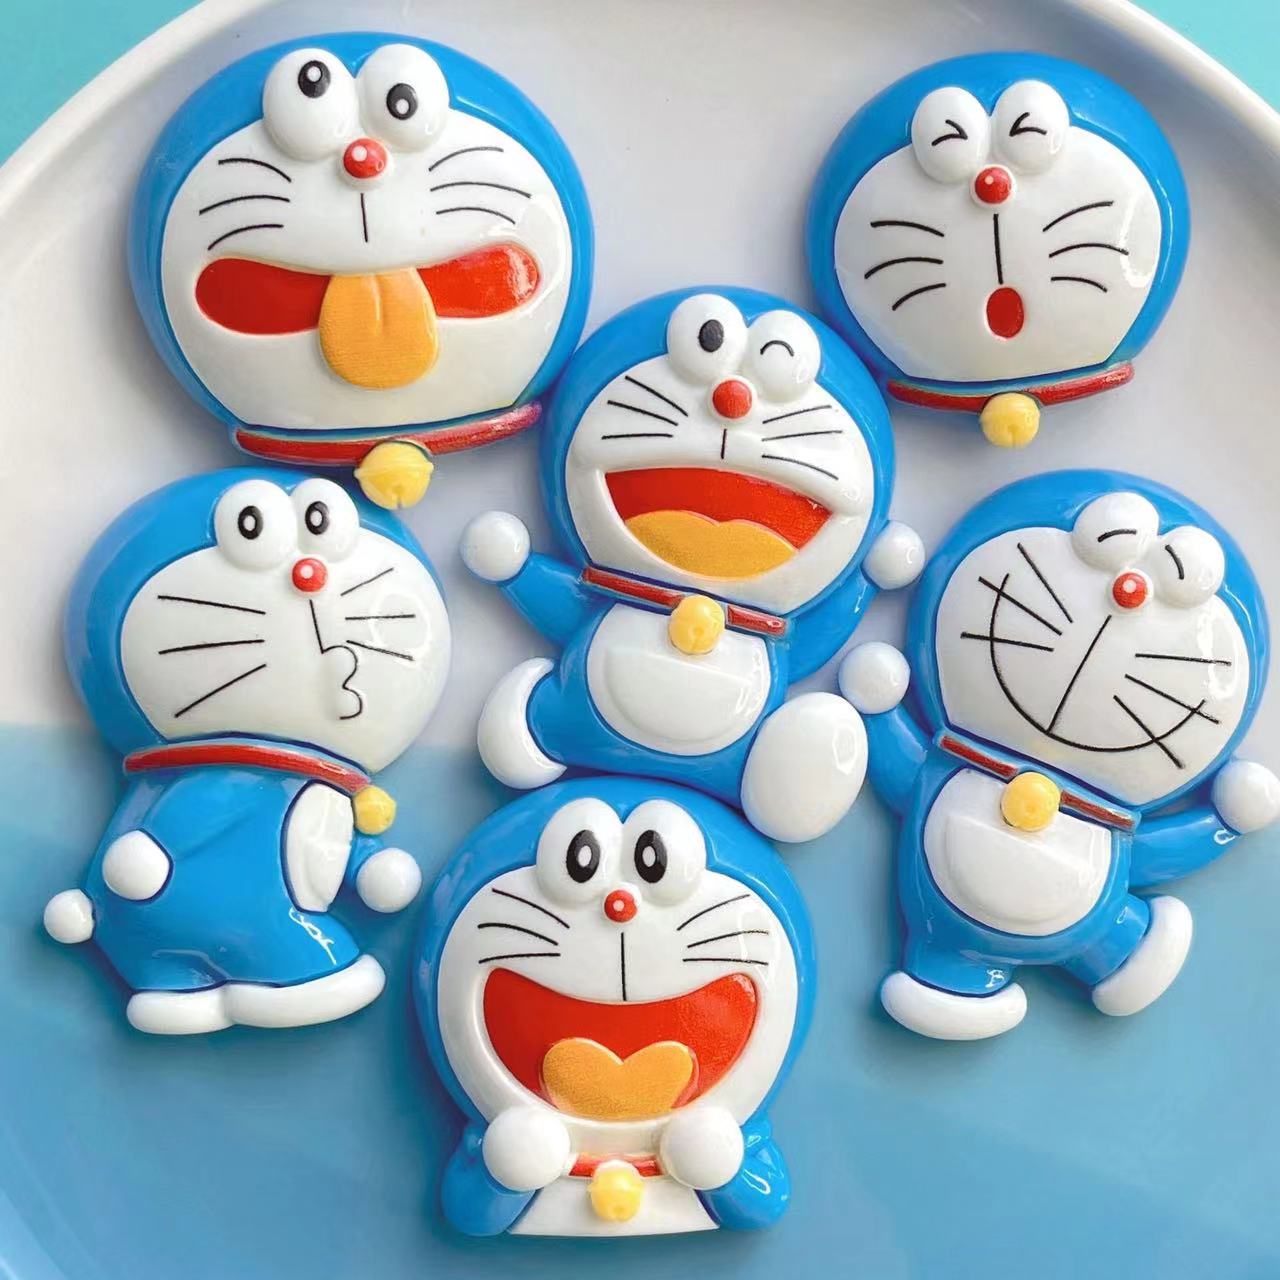 A0556 Doraemon Large size(PRE-SALE)